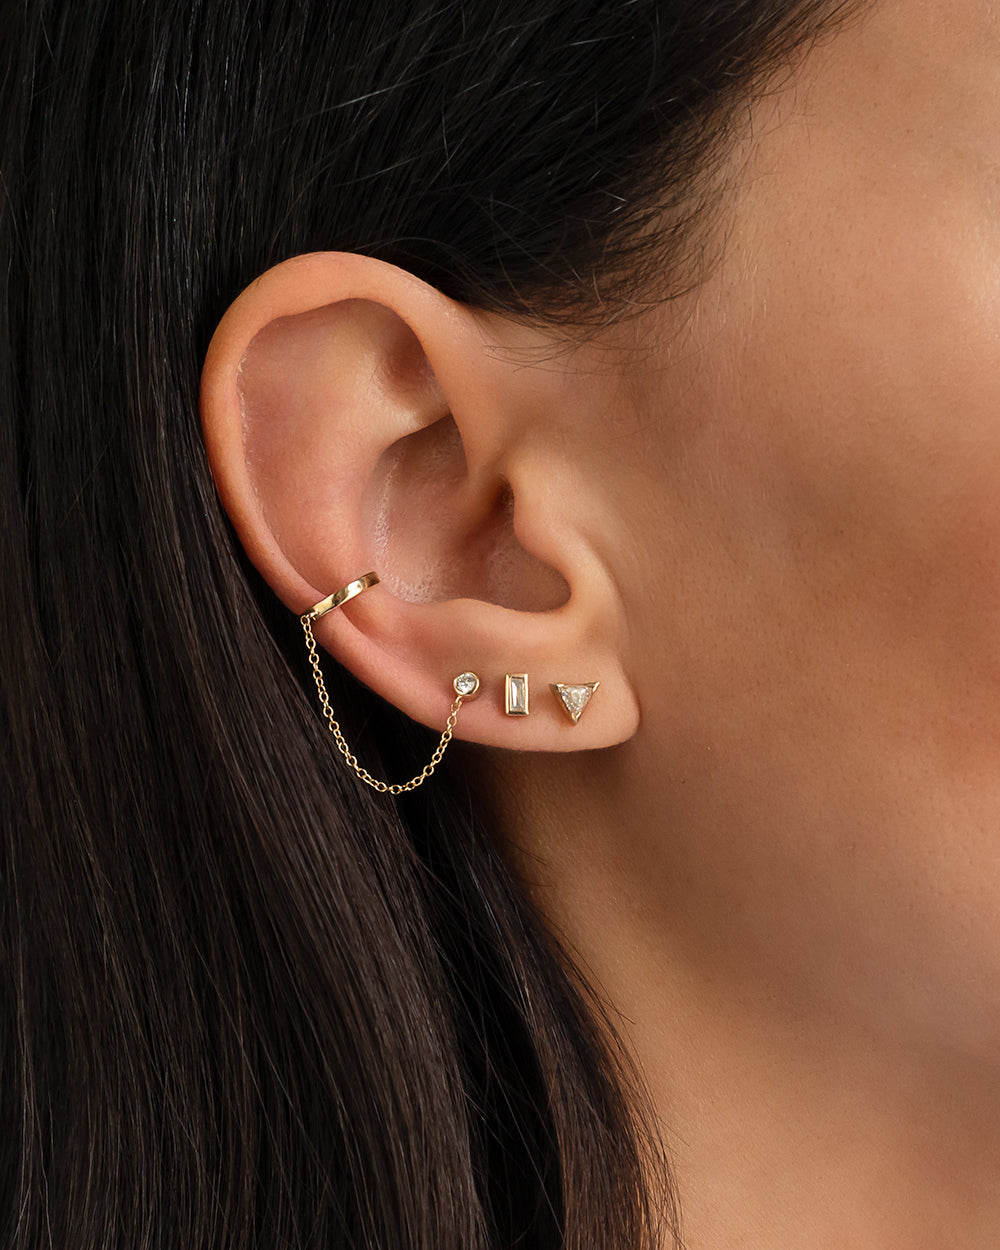 Buy Gold Ear Cuff Chain Earrings Gold Earrings Cartilage Chain Earrings  Double Stud Earrings Ball Earrings Boho Earrings Gold Jewelry Ball Studs  Online in India - Etsy